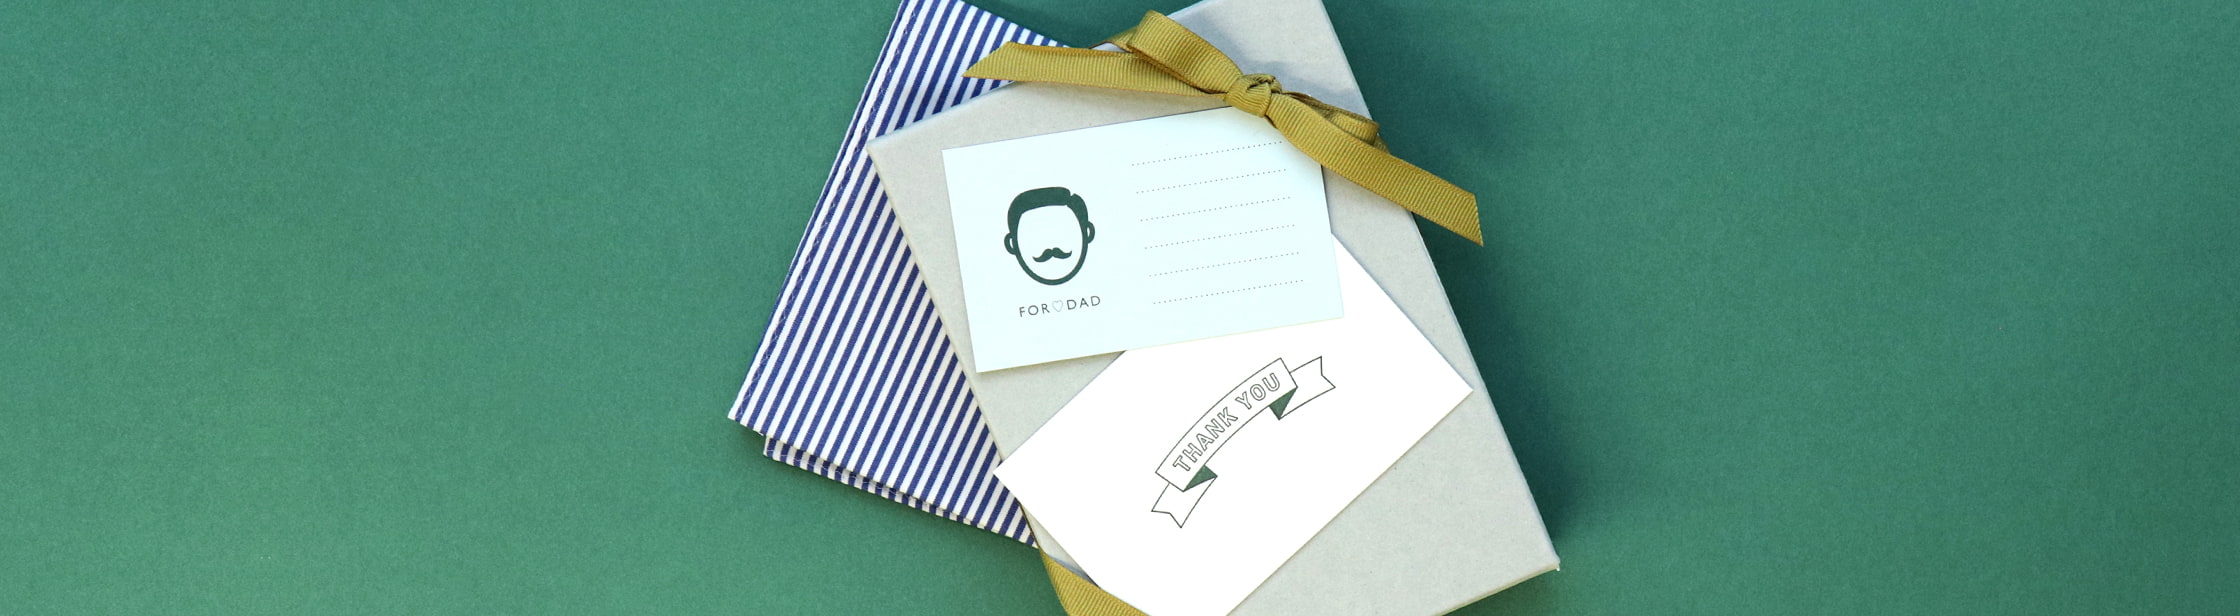 ミニ封筒 ショップツール メッセージカードなどに 羽車公式サイト 紙 印刷 デザイン